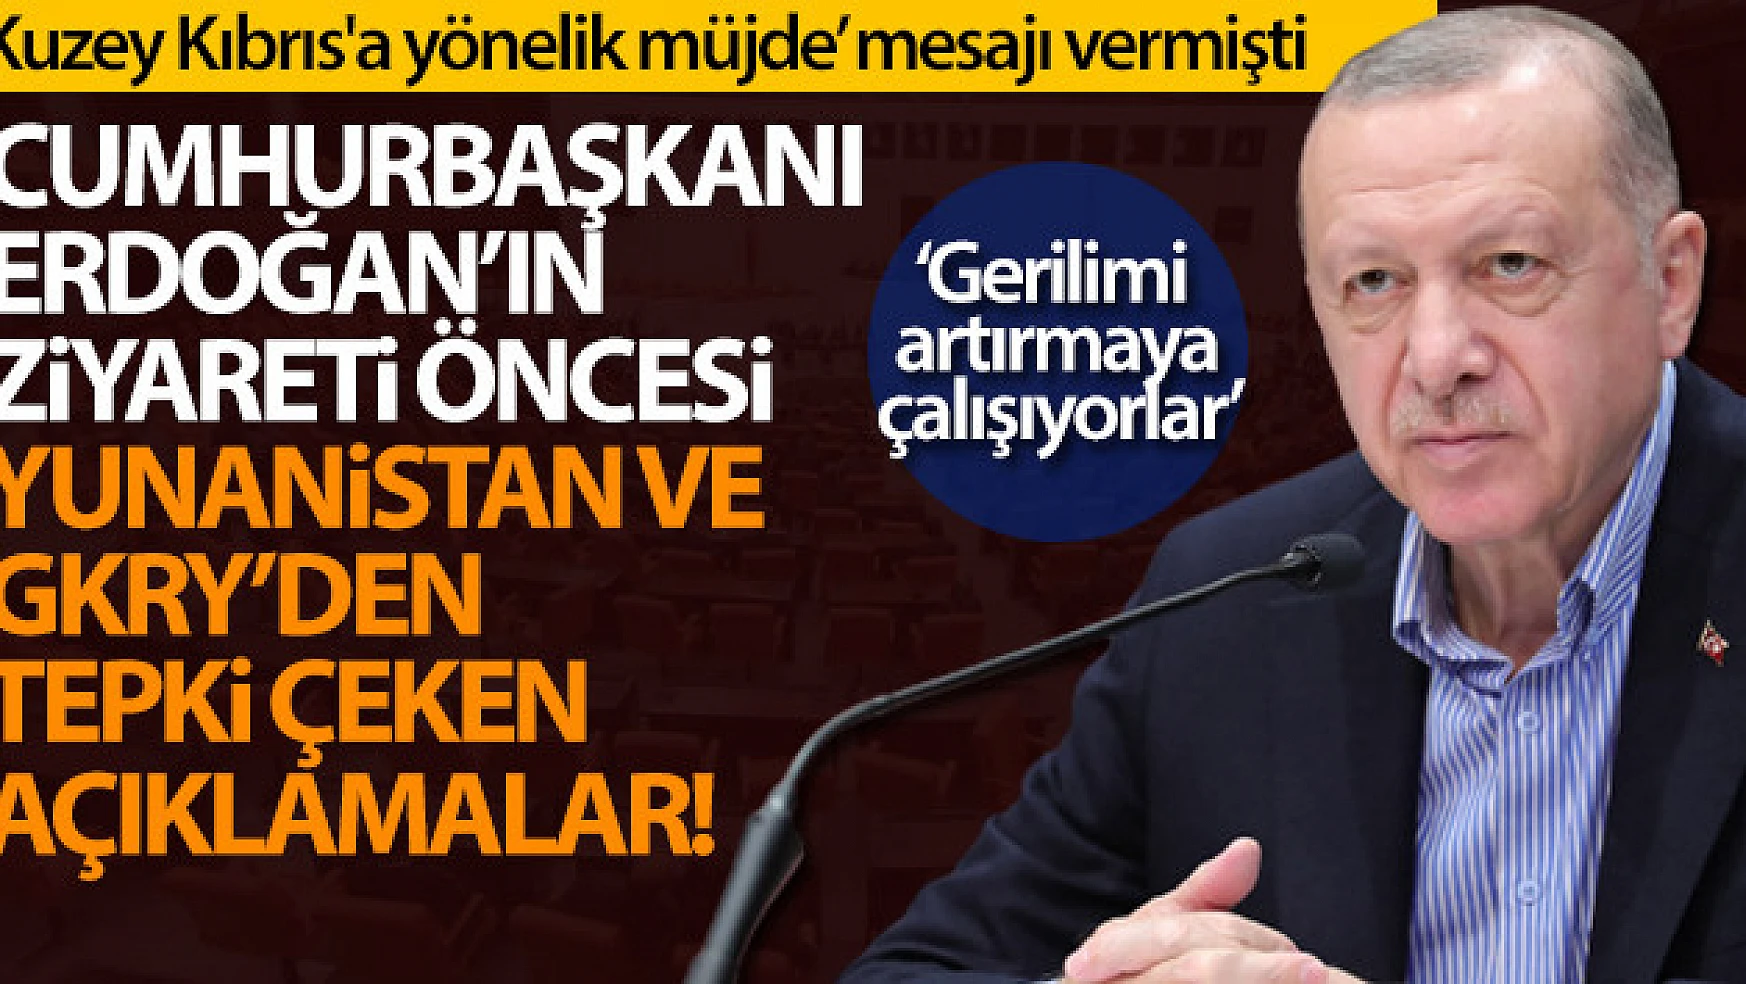 Cumhurbaşkanı Erdoğan'ın ziyareti öncesi Yunanistan ve GKRY'den tepki çeken açıklamalar